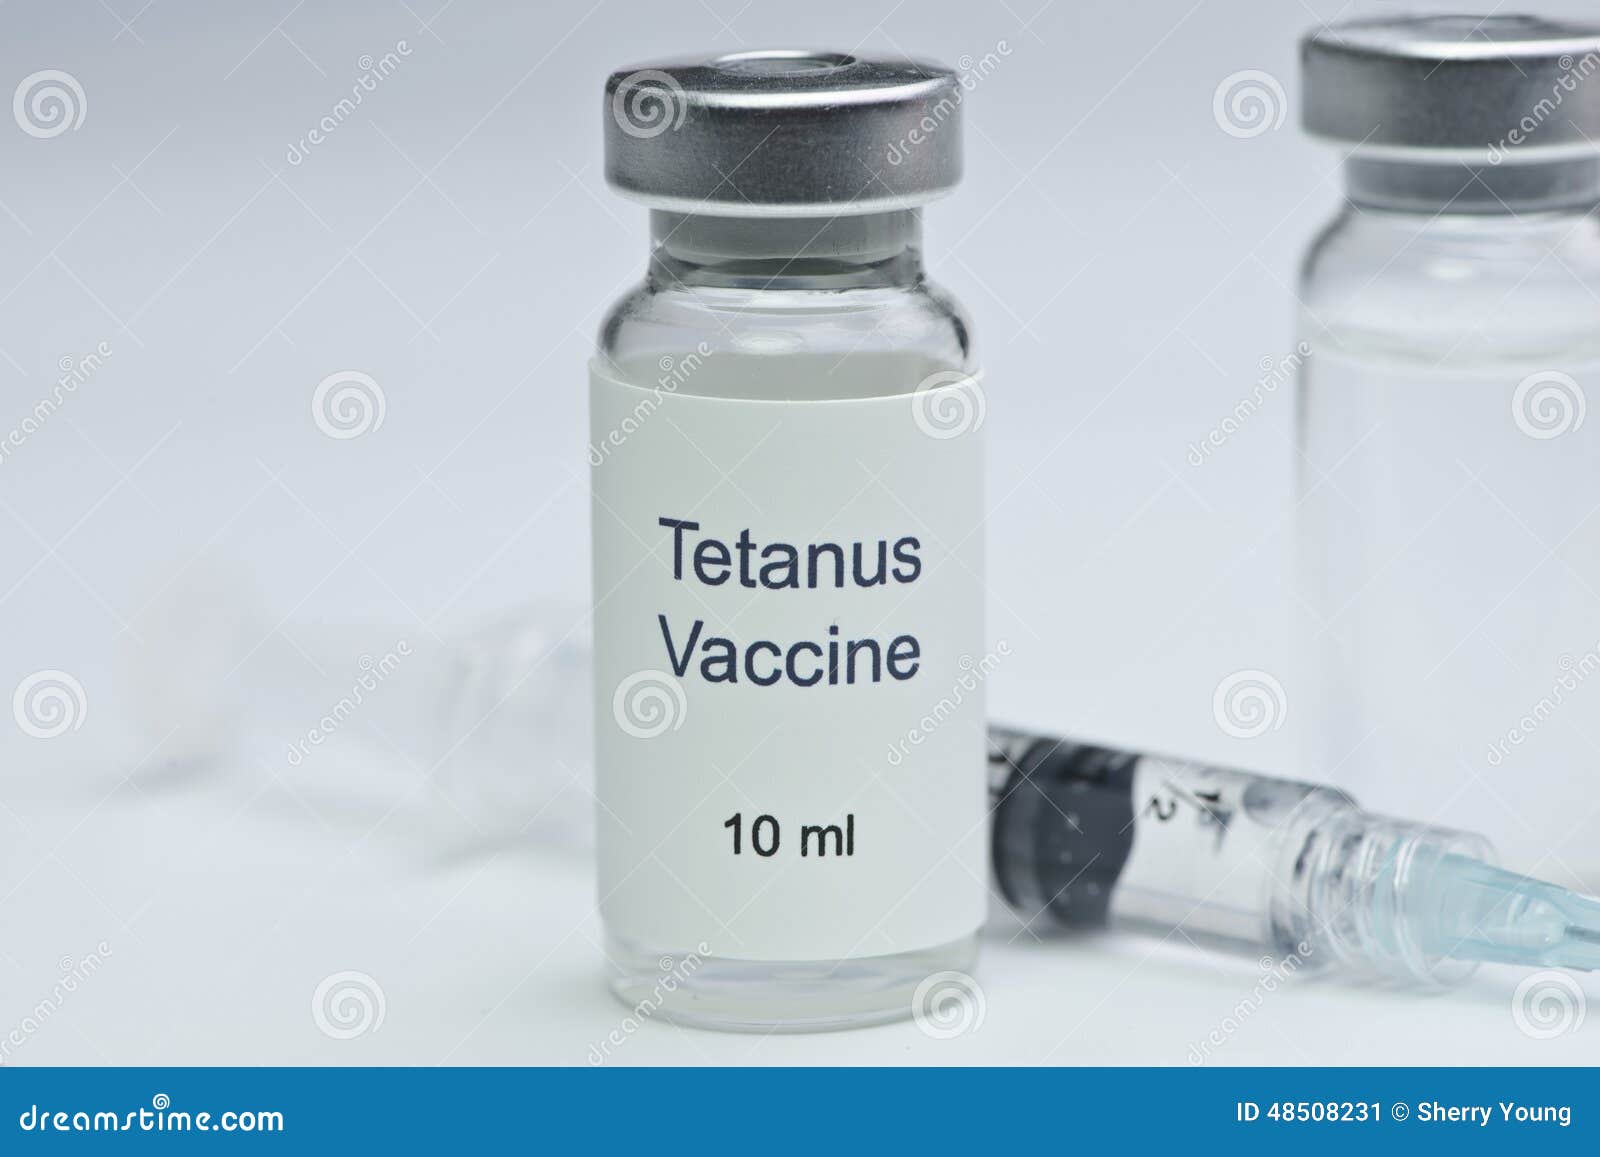 tetanus-vaccine-glass-vial-syringe-48508231.jpg